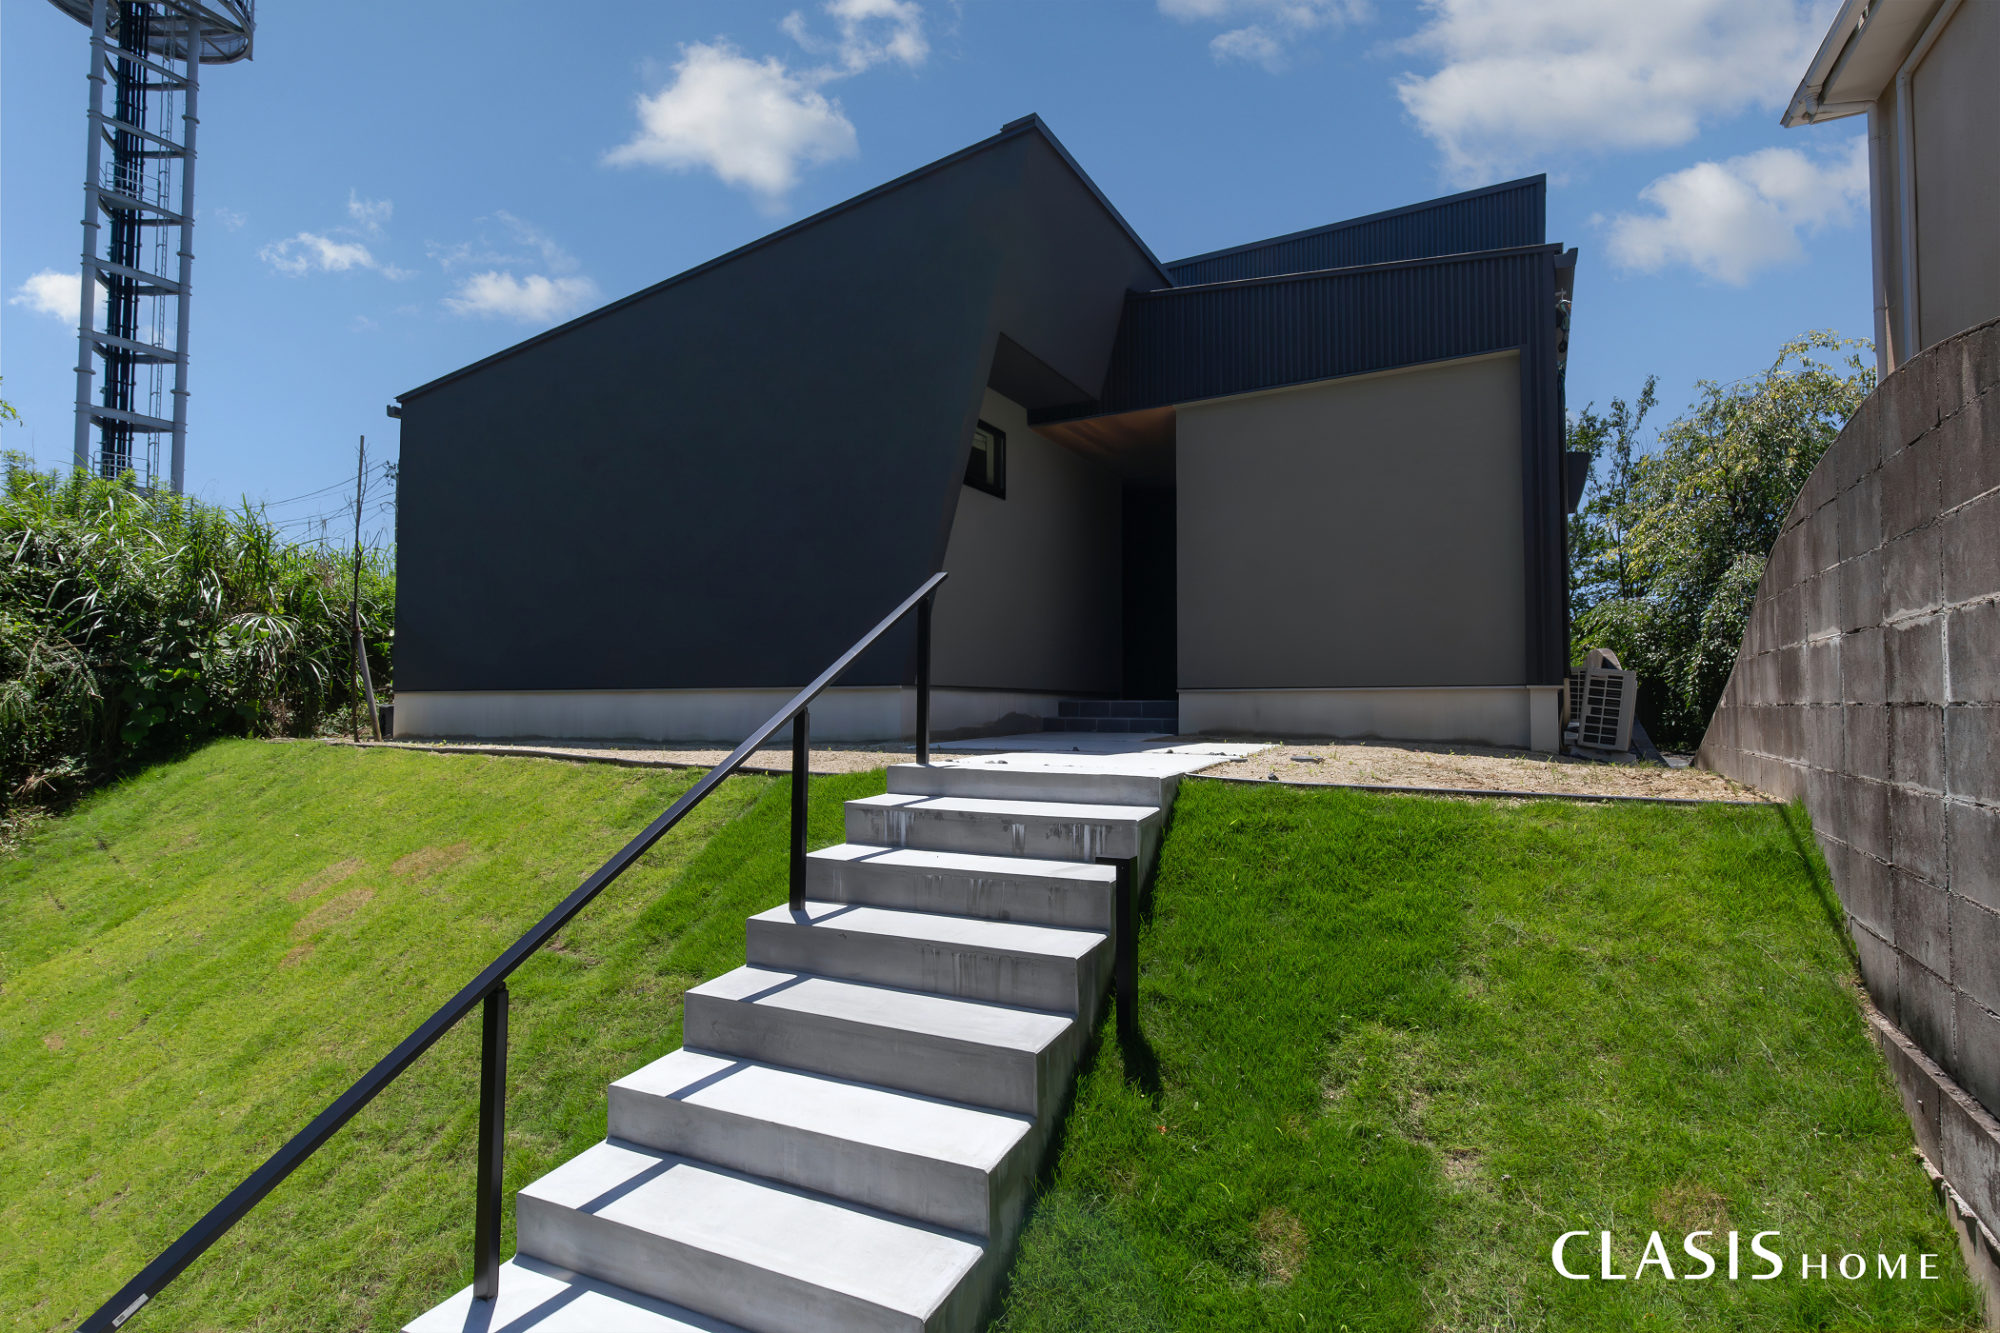 ブラックのガルバリウム鋼板をベースにブラック・グレーの塗り壁を組み合わせた、斜め壁が際立つ外観。